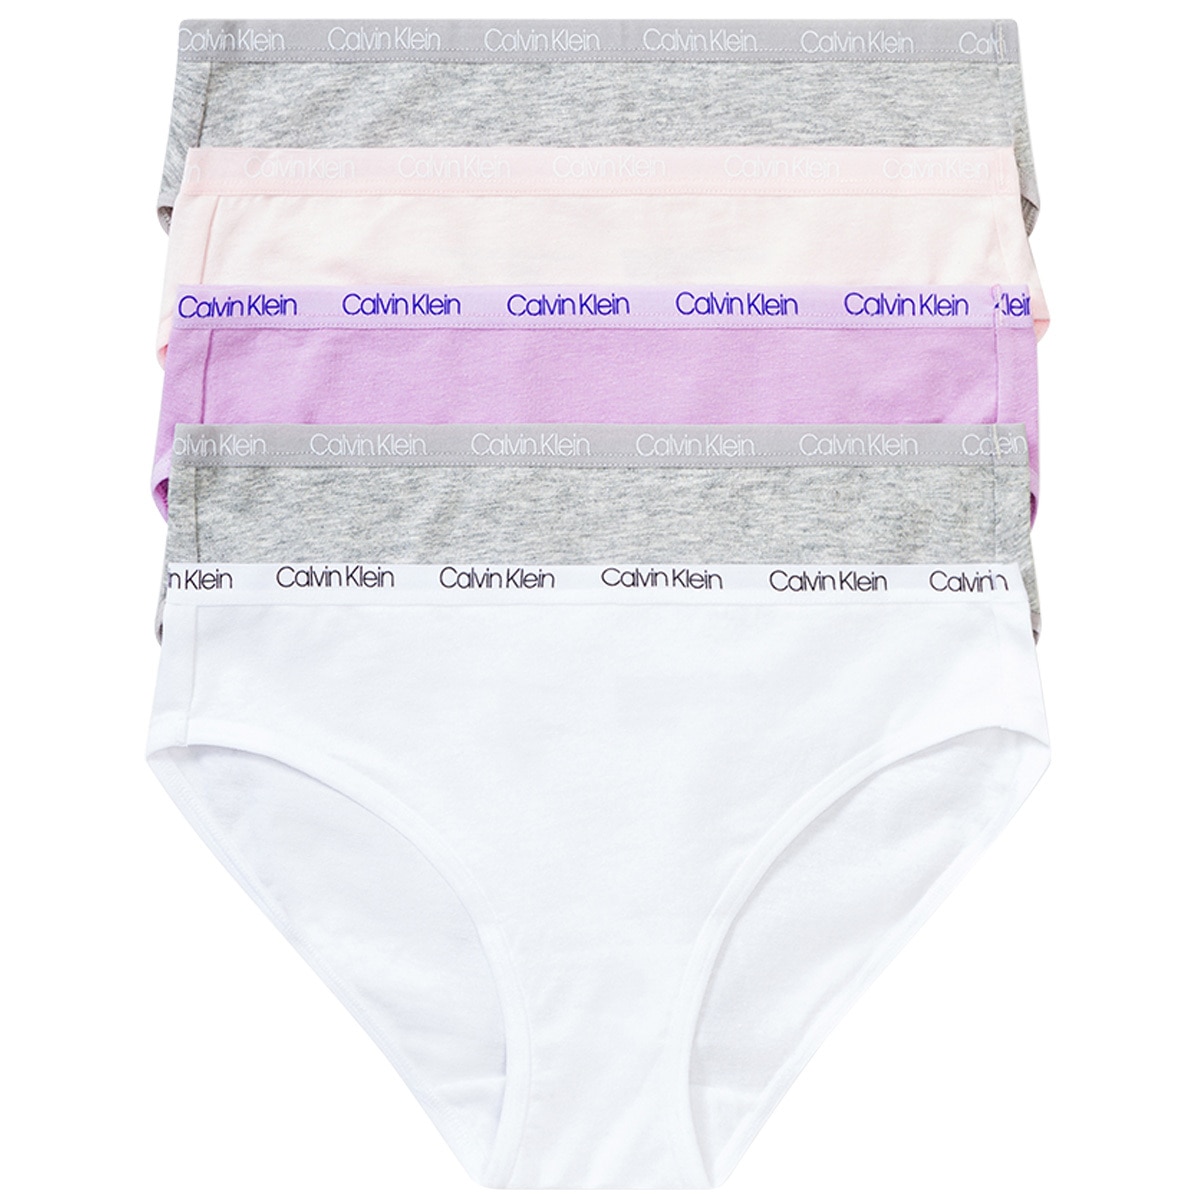 calvin klein costco underwear